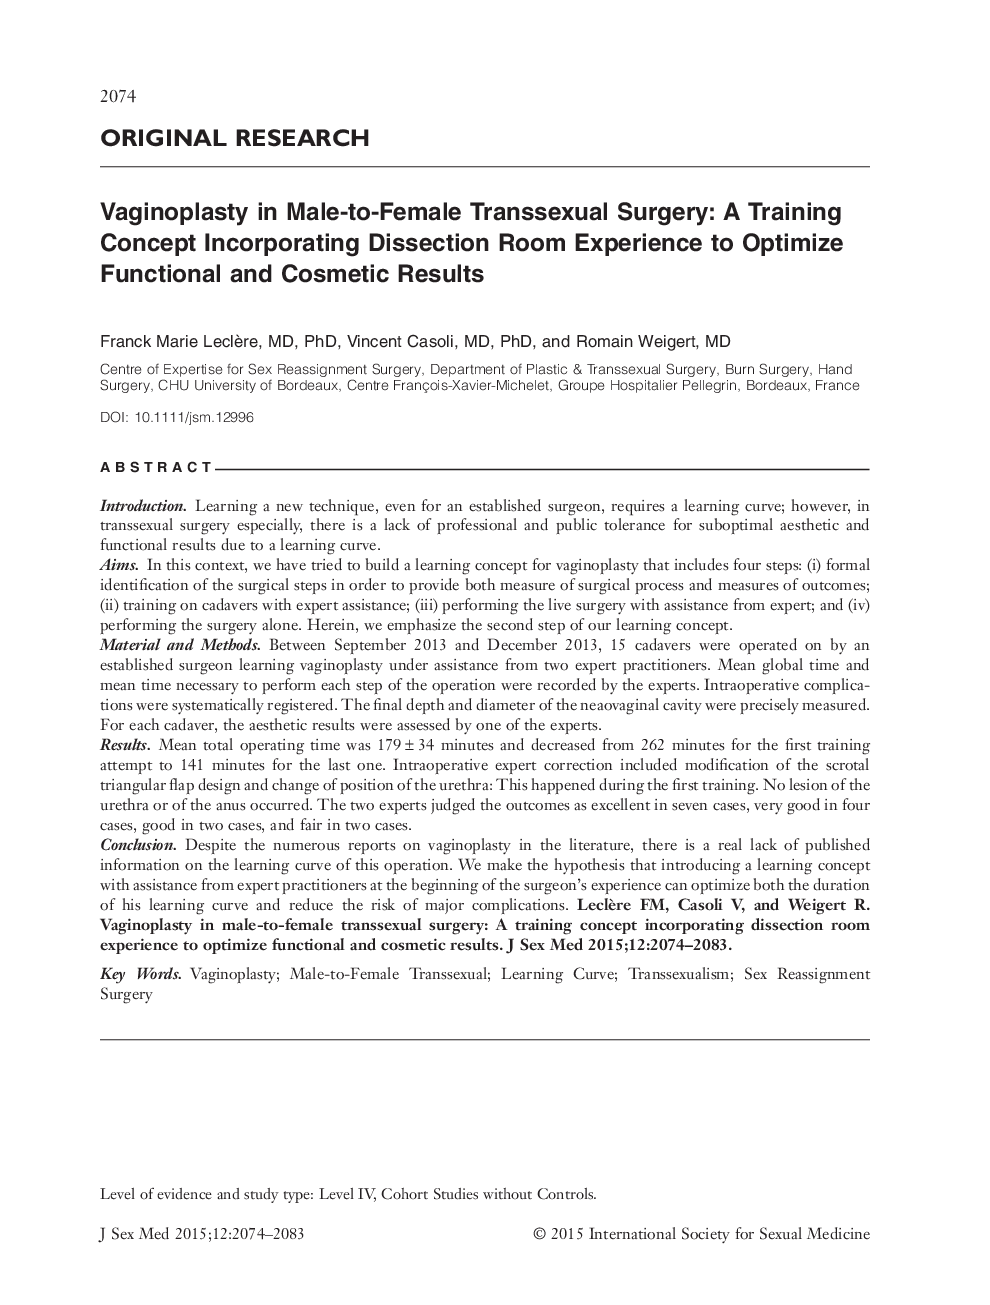 واژینوپلاستی در جراحی ترانس سکس زنانه و زنانه: یک مفهوم آموزشی حاوی تجربه محوطه اتاق برای بهینه سازی نتایج عملکردی و زیبایی 